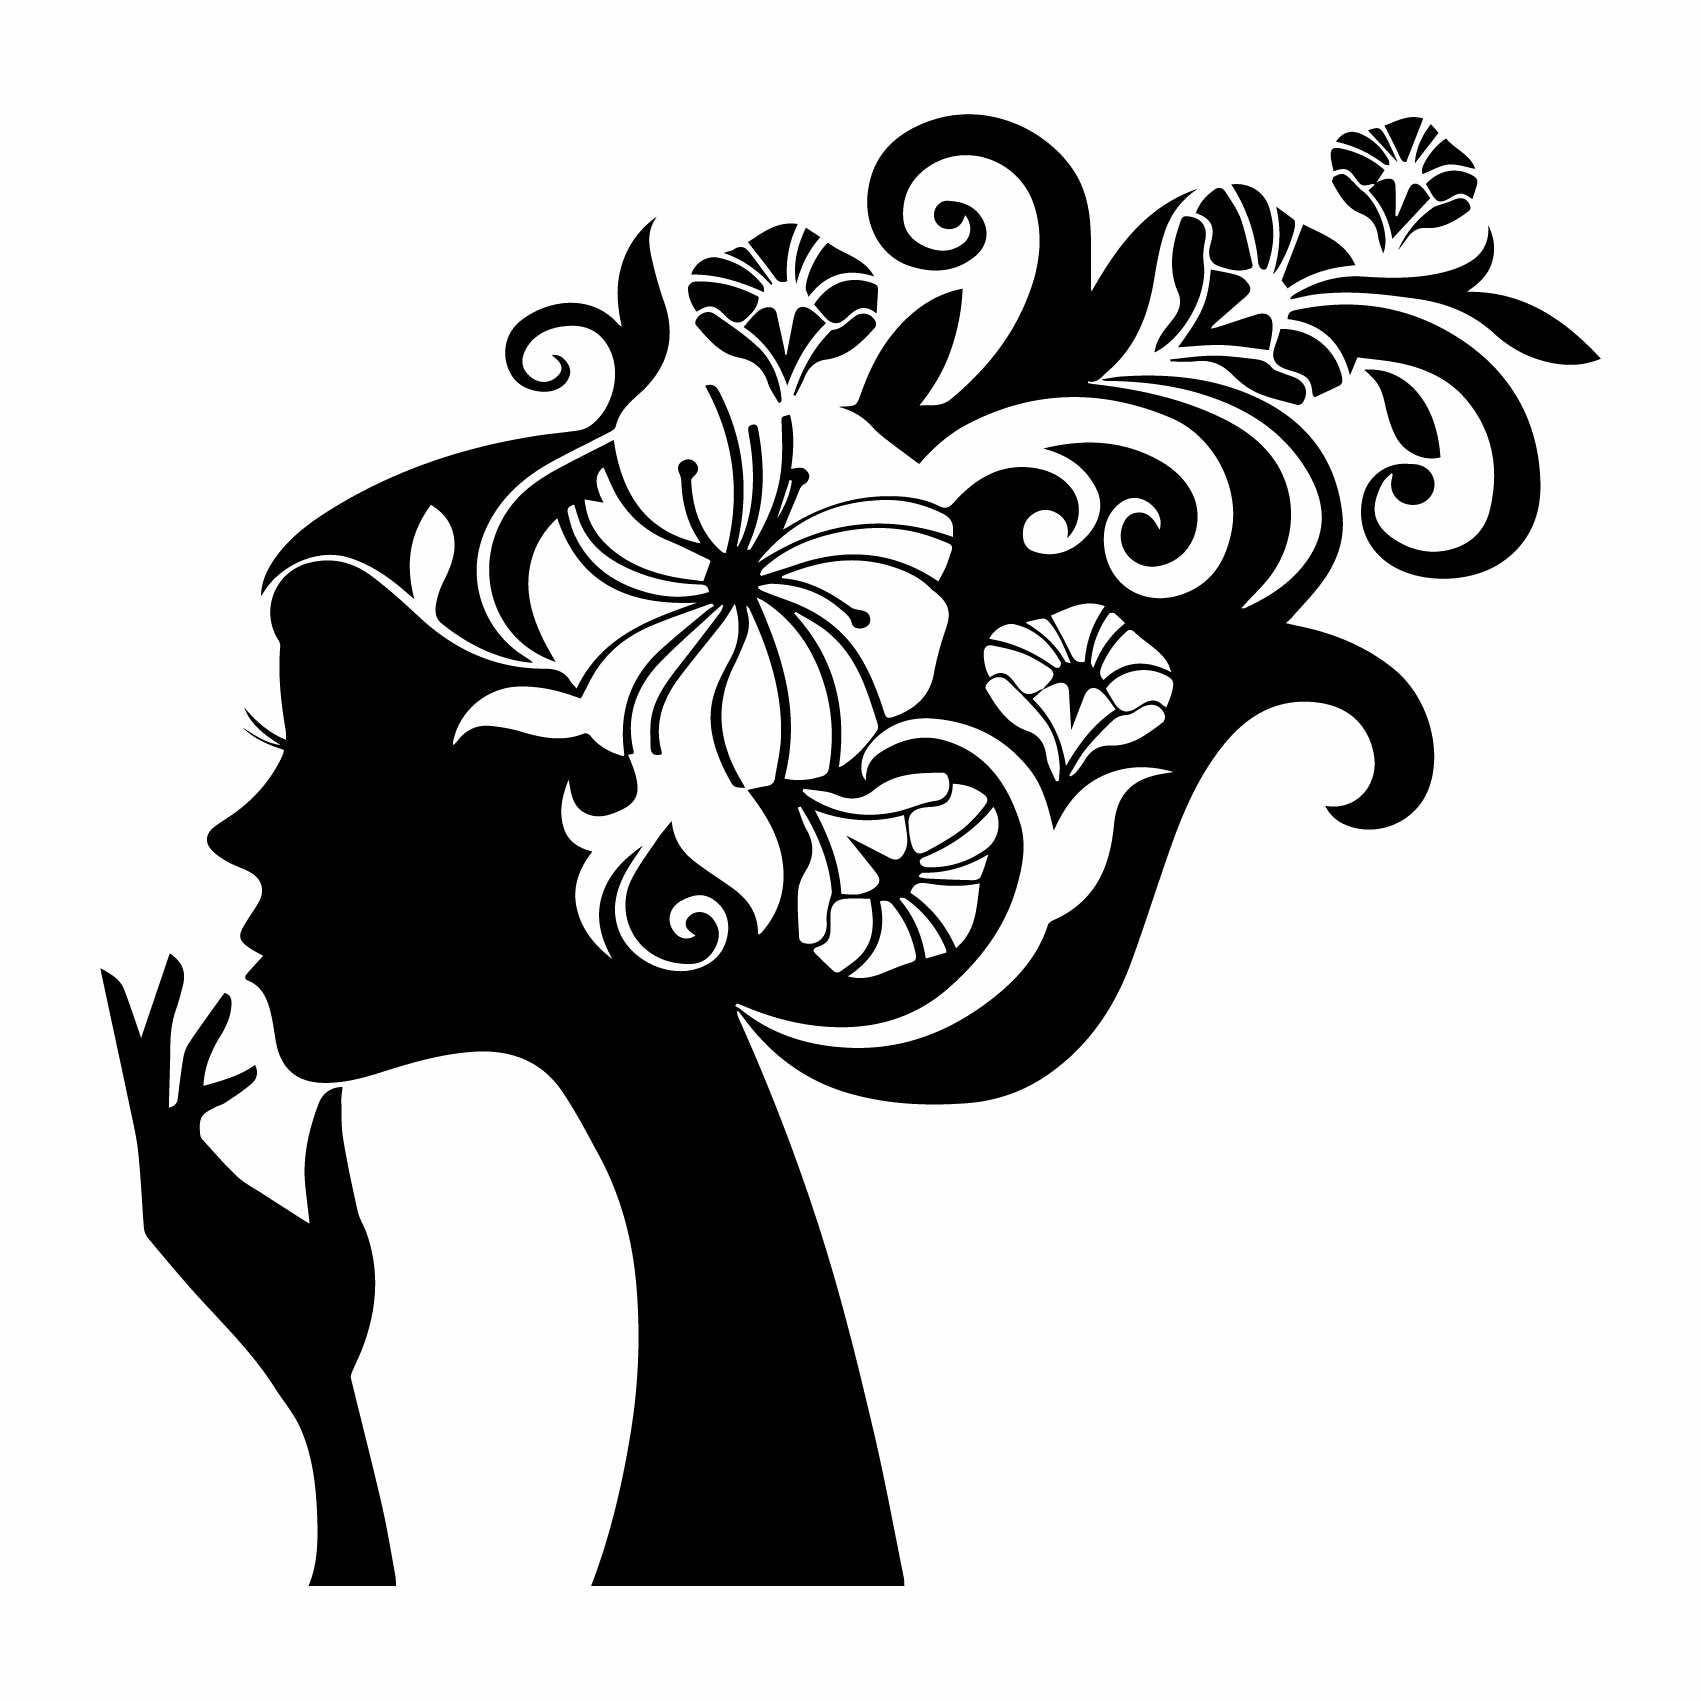 stickers-femme-fleur-silhouette-ref5silhouette-stickers-muraux-silhouette-autocollant-silhouettes-chambre-salon-sticker-mural-ombre-(2)